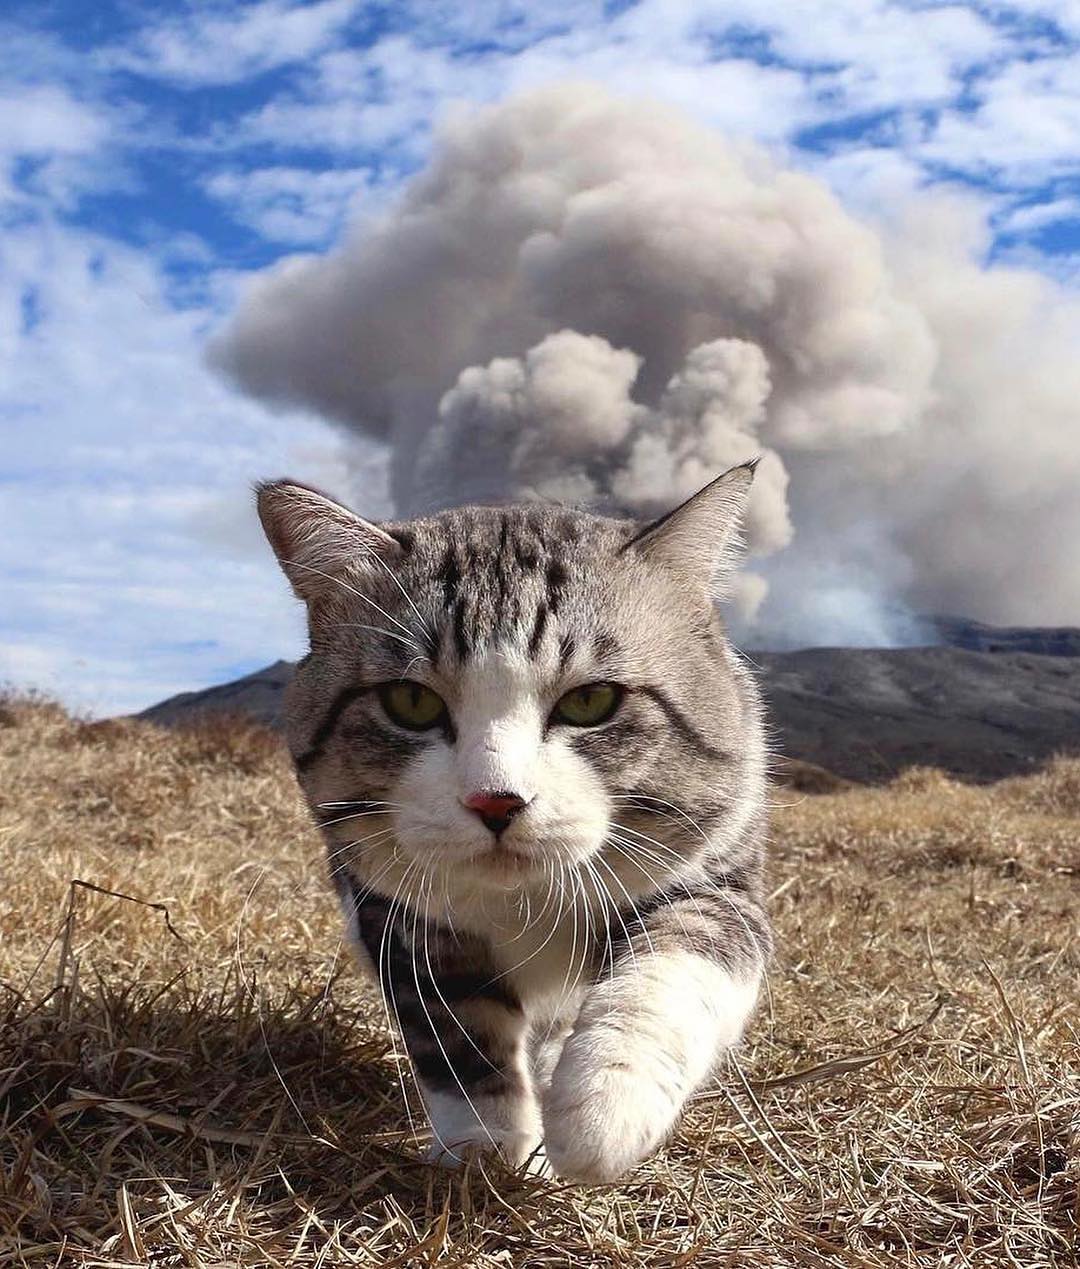 Nyankichi the cat walking away from the erupting Aso volcano.jpg